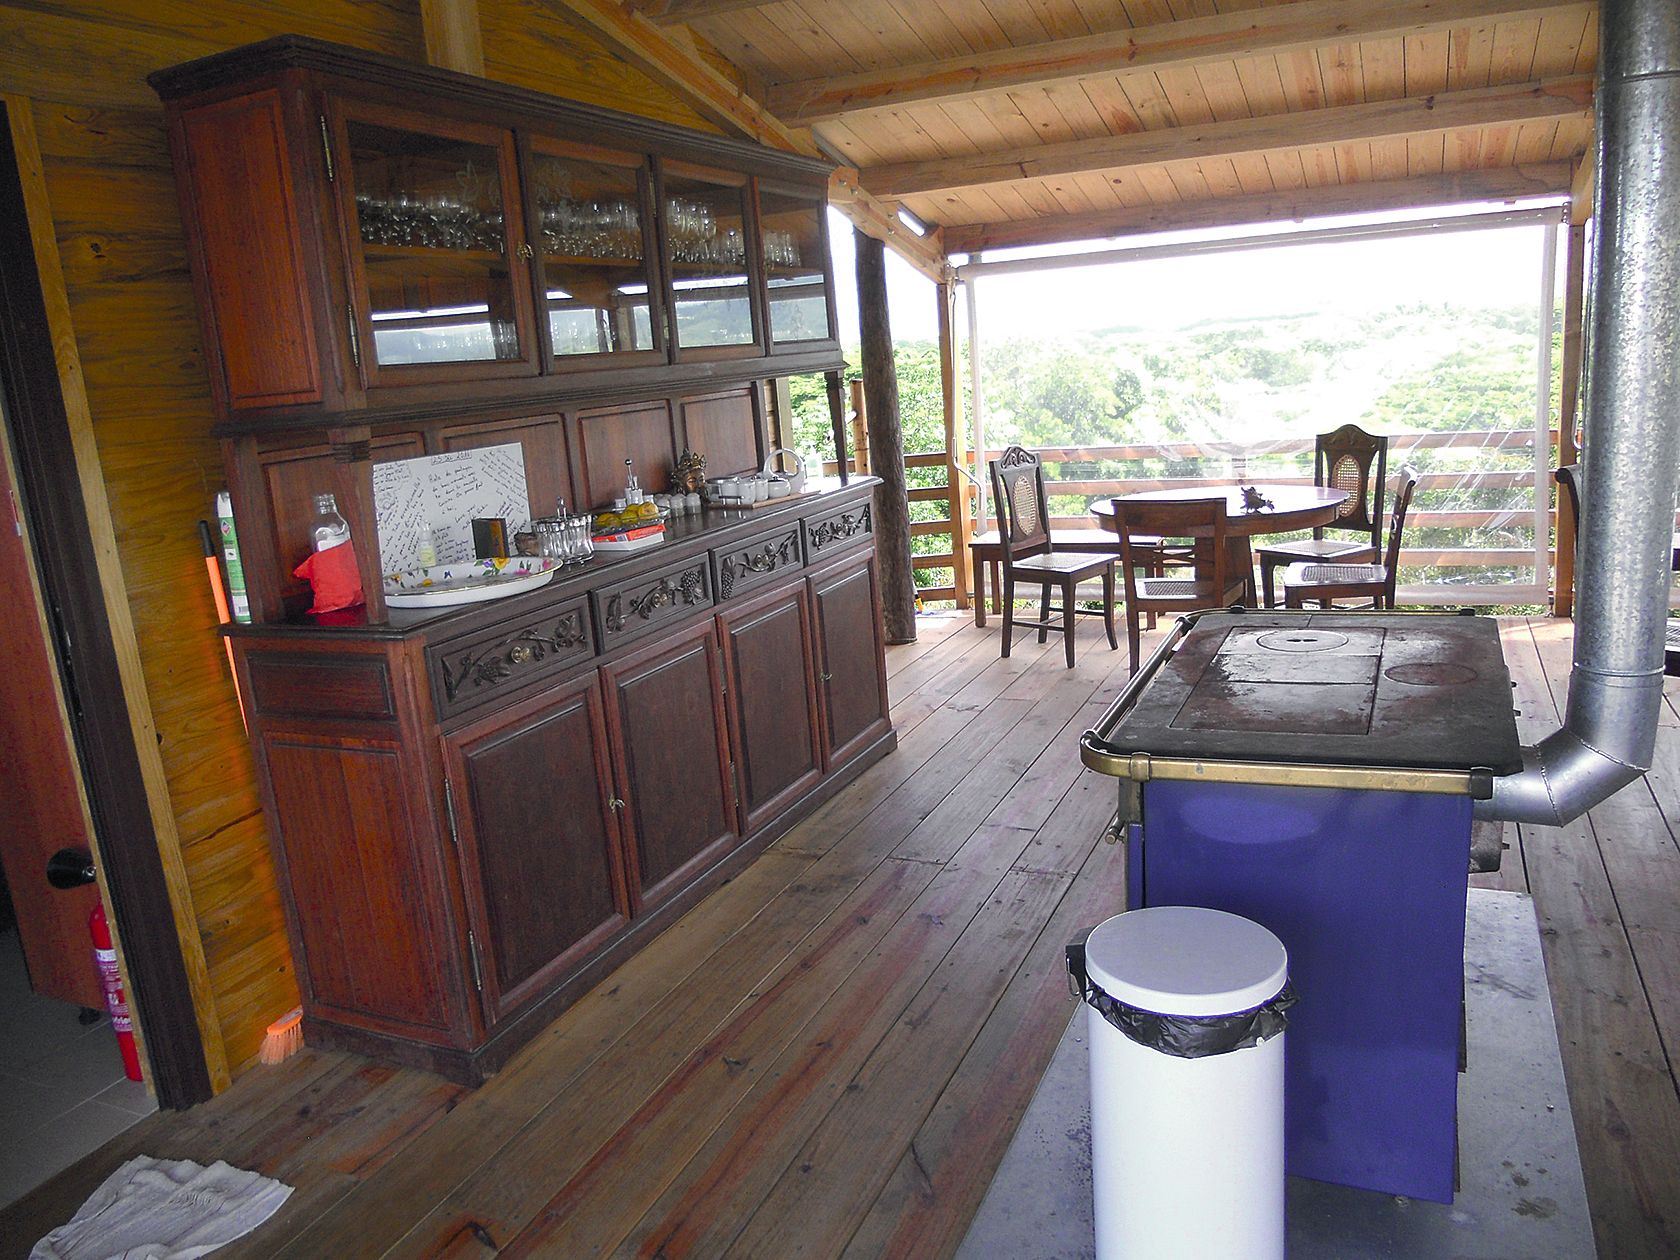 L’accueil se fait sur une terrasse réalisée tout en bois, avec un mobilier rustique.